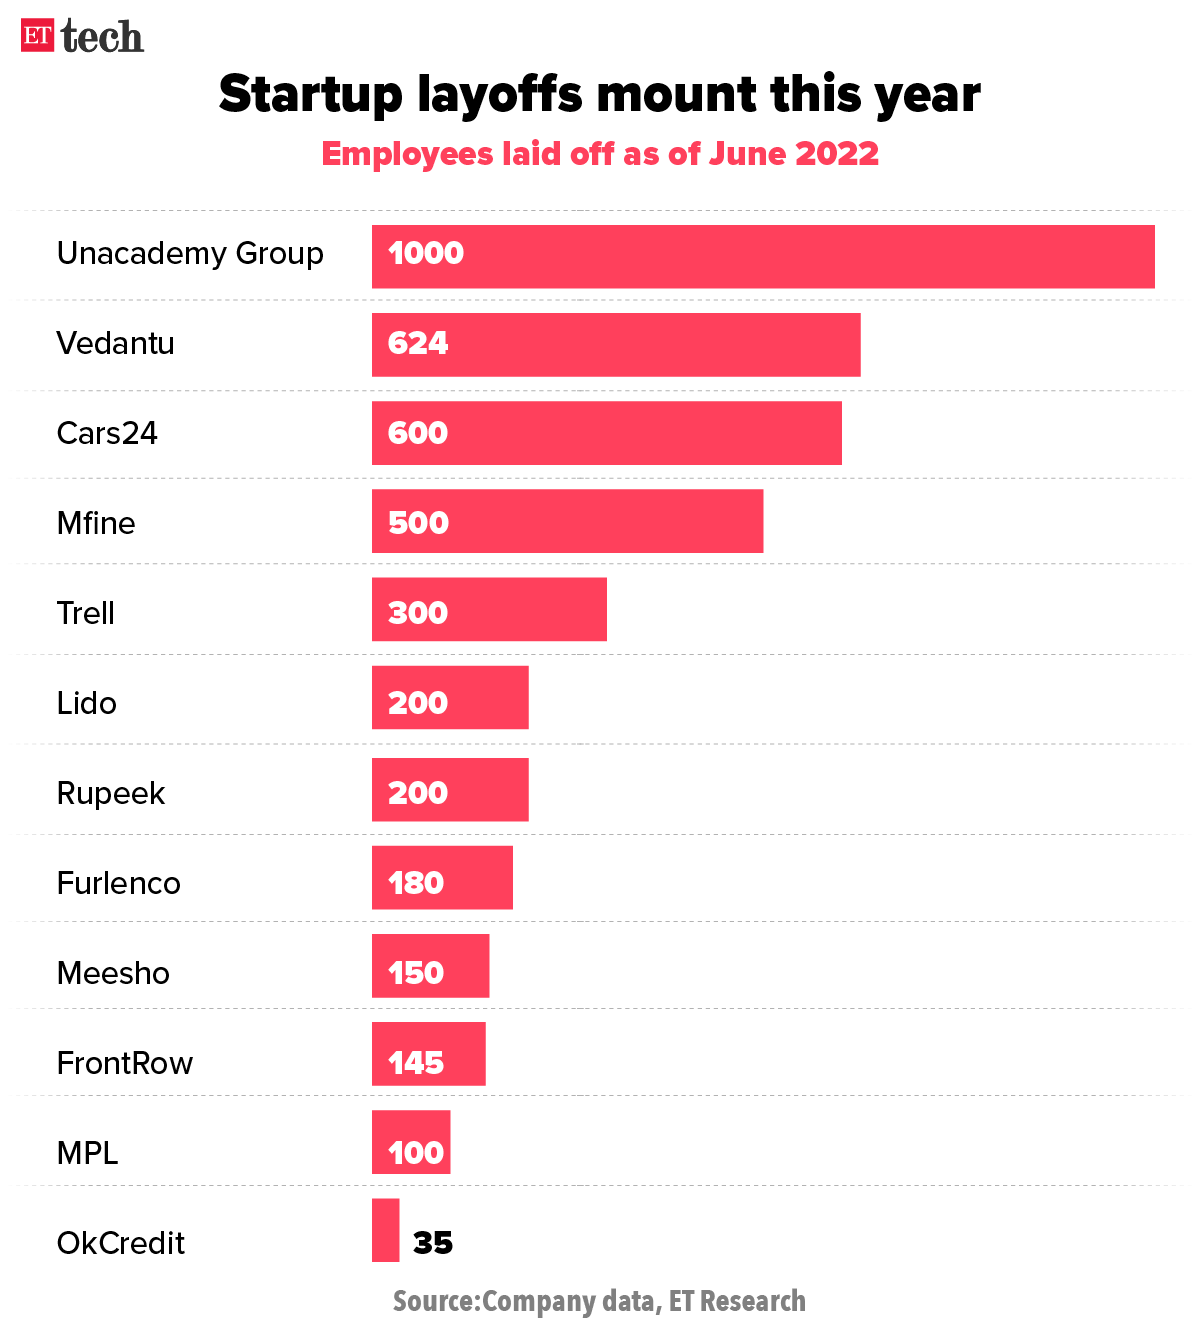 Job cuts among India's Startup unicorns. Source: ETresearch